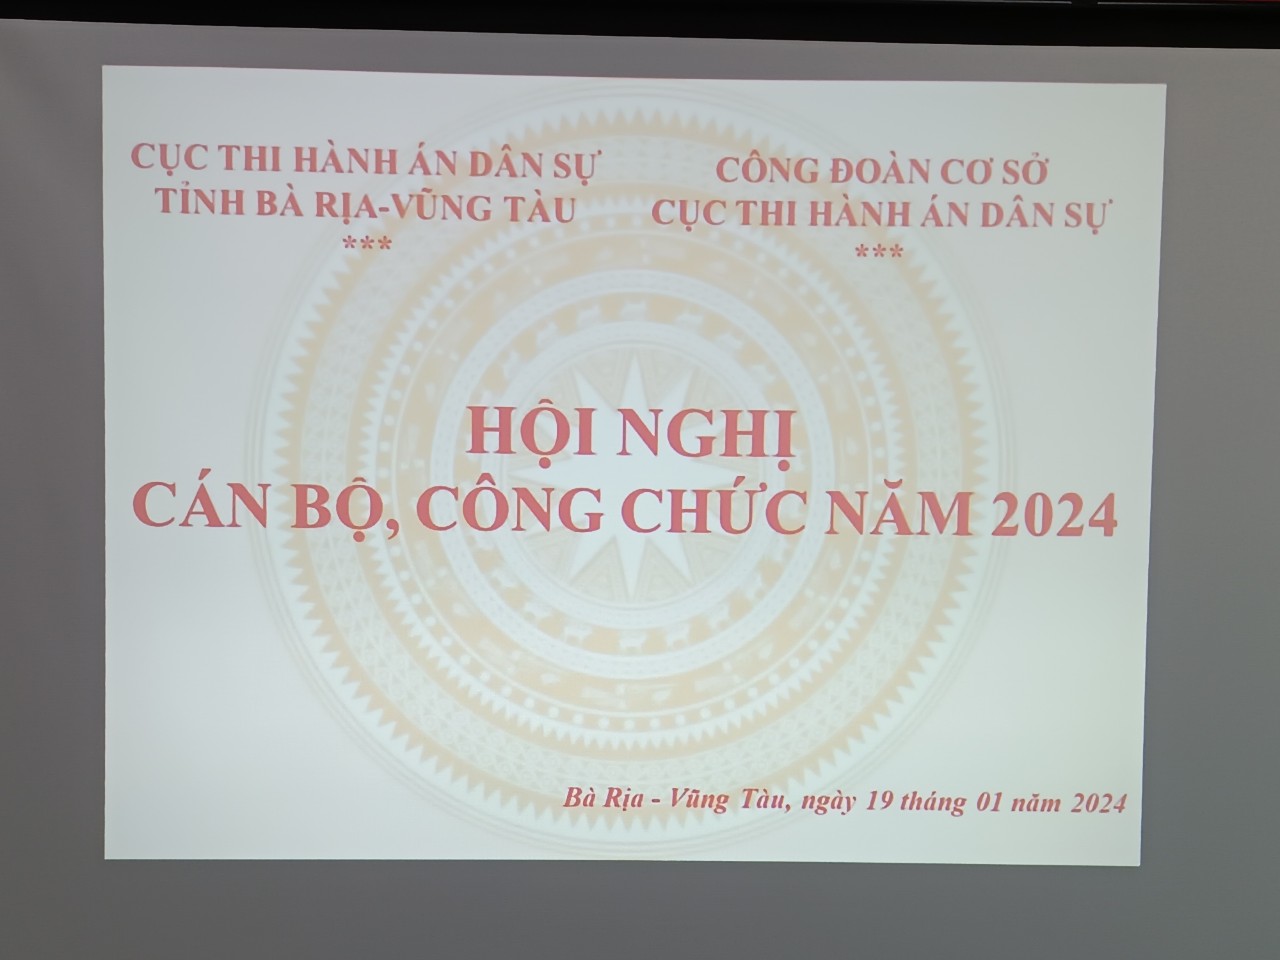 Cục Thi hành án dân sự tỉnh Bà Rịa-Vũng Tàu tổ chức Hội nghị Cán bộ, Công chức năm 2023